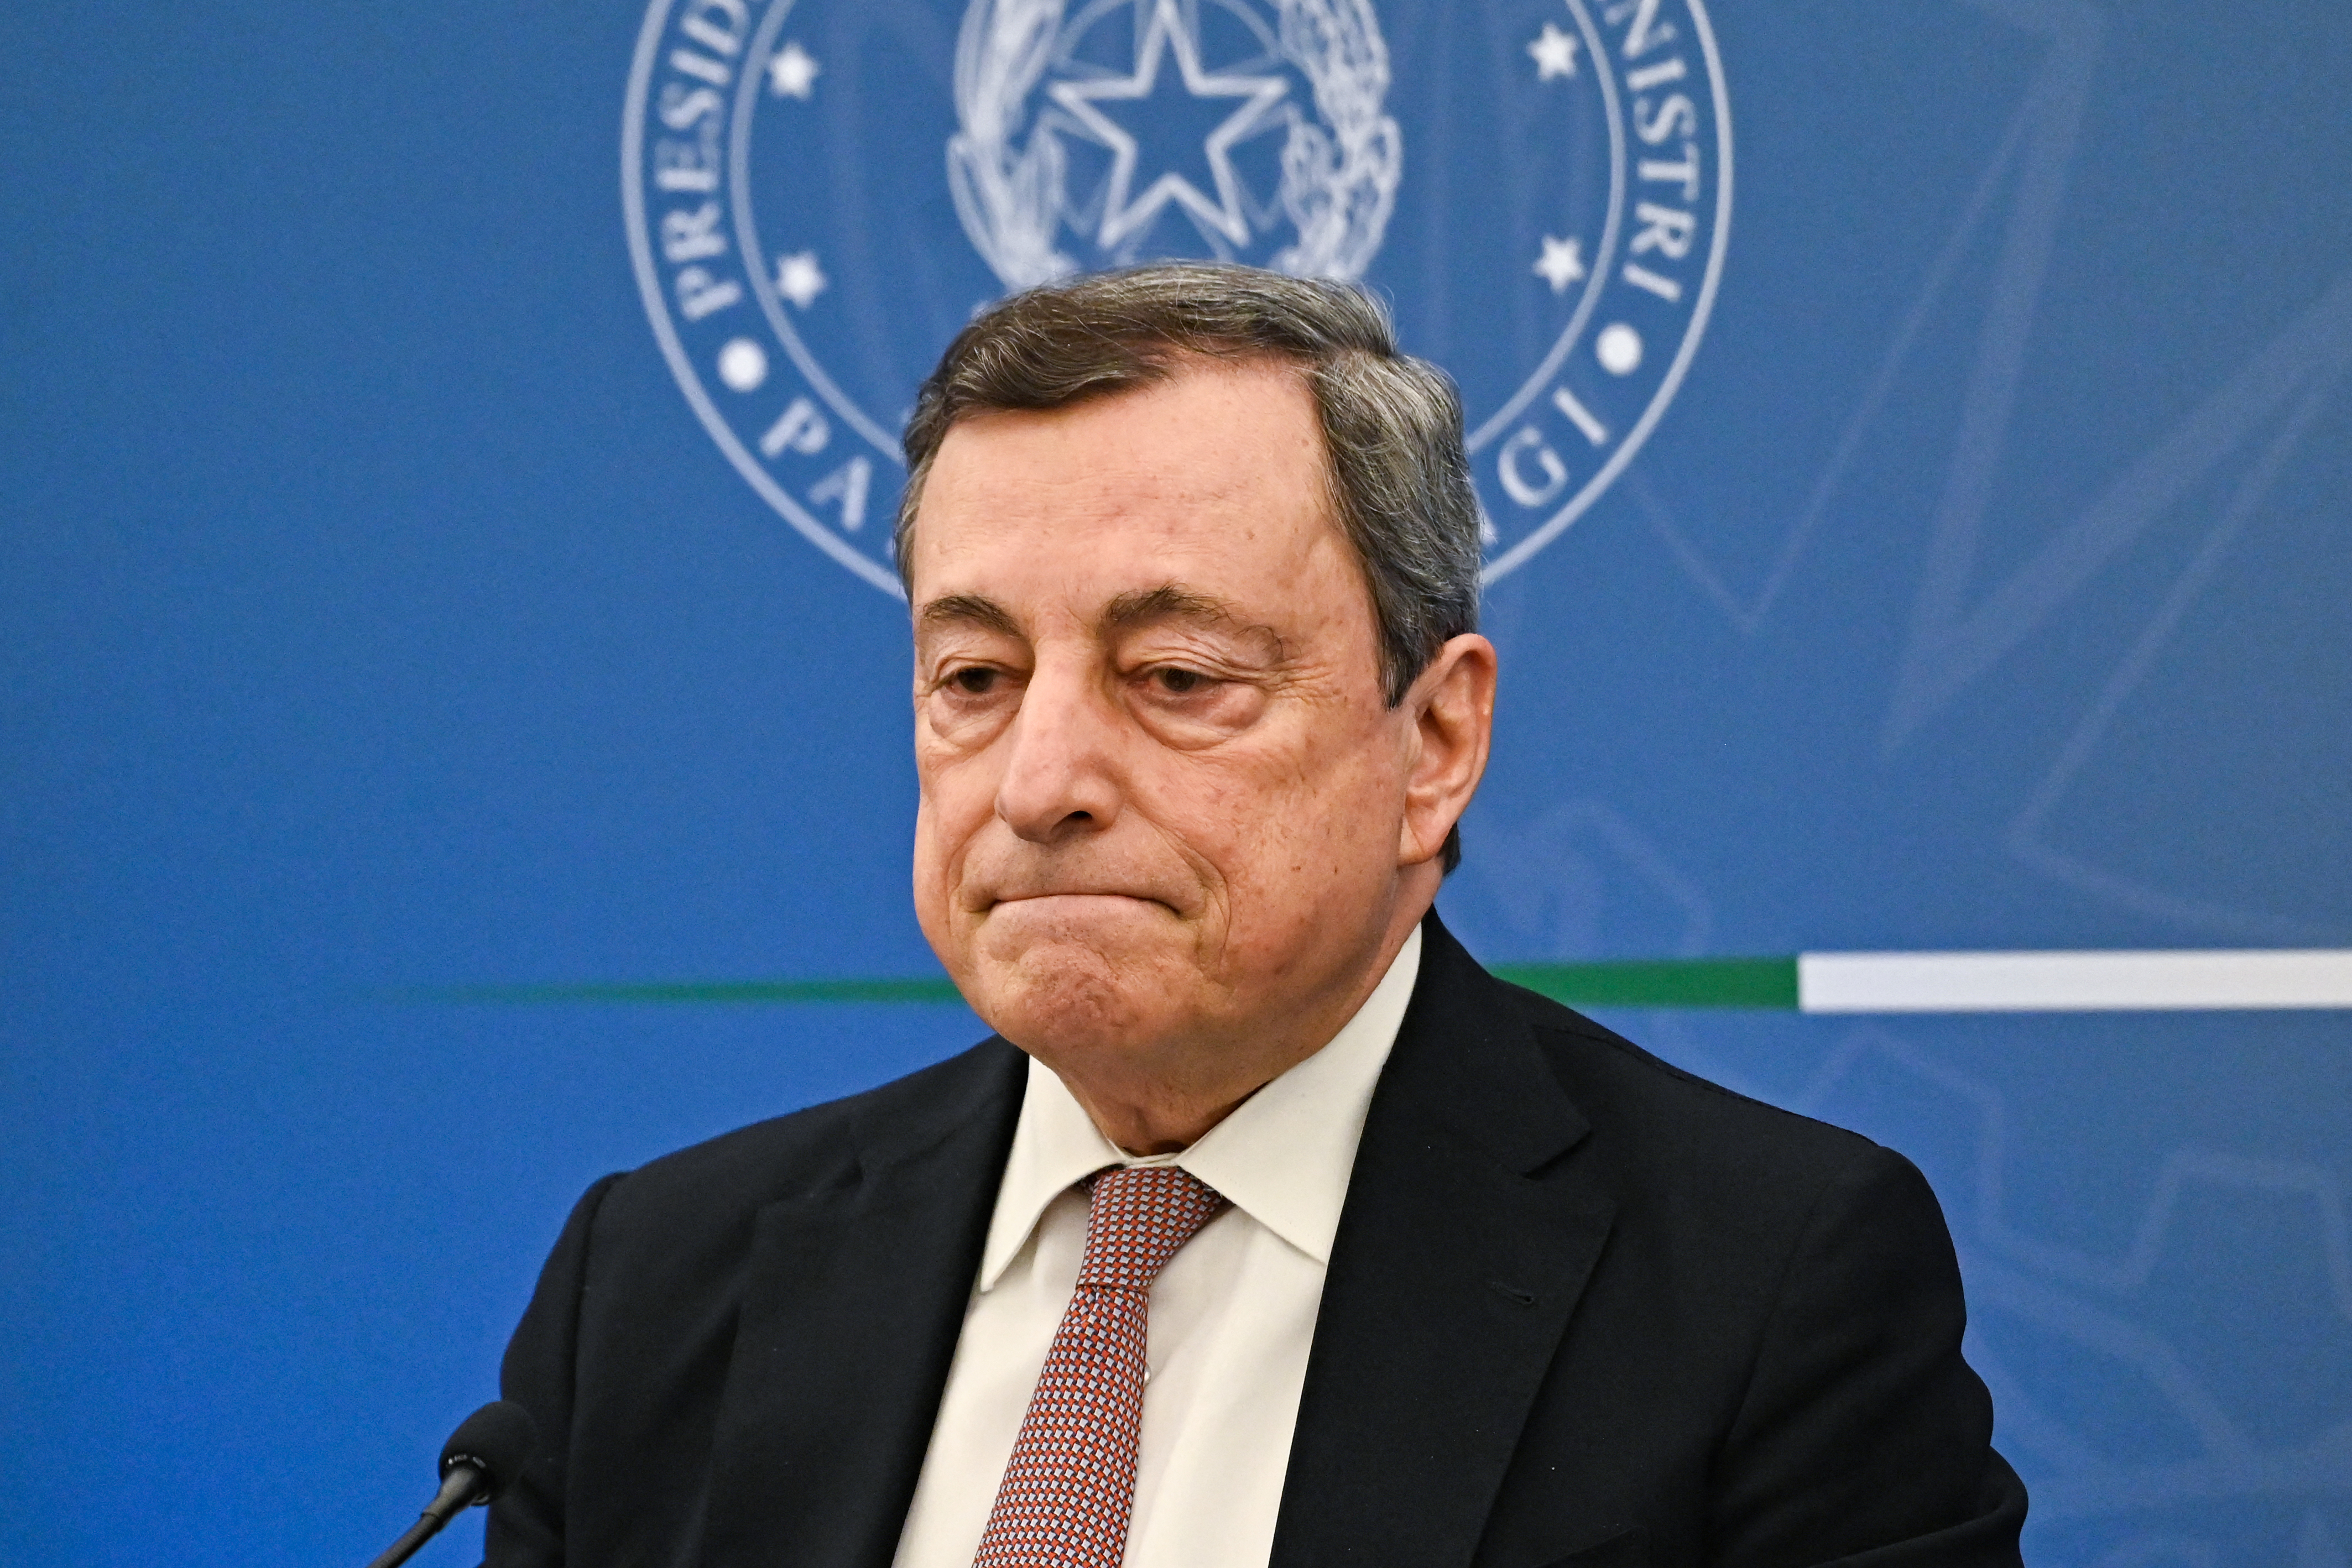 Lemondott Mario Draghi, Olaszország miniszterelnöke